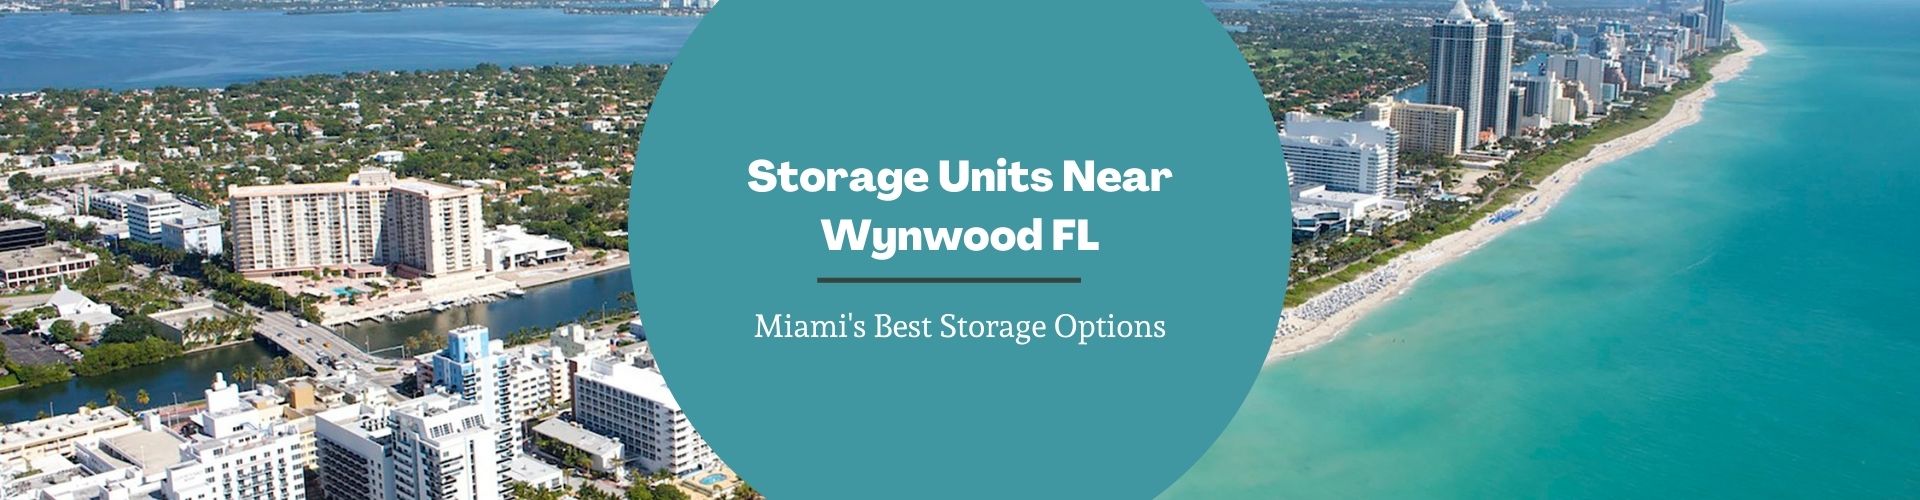 Storage Units Near Wynwood FL